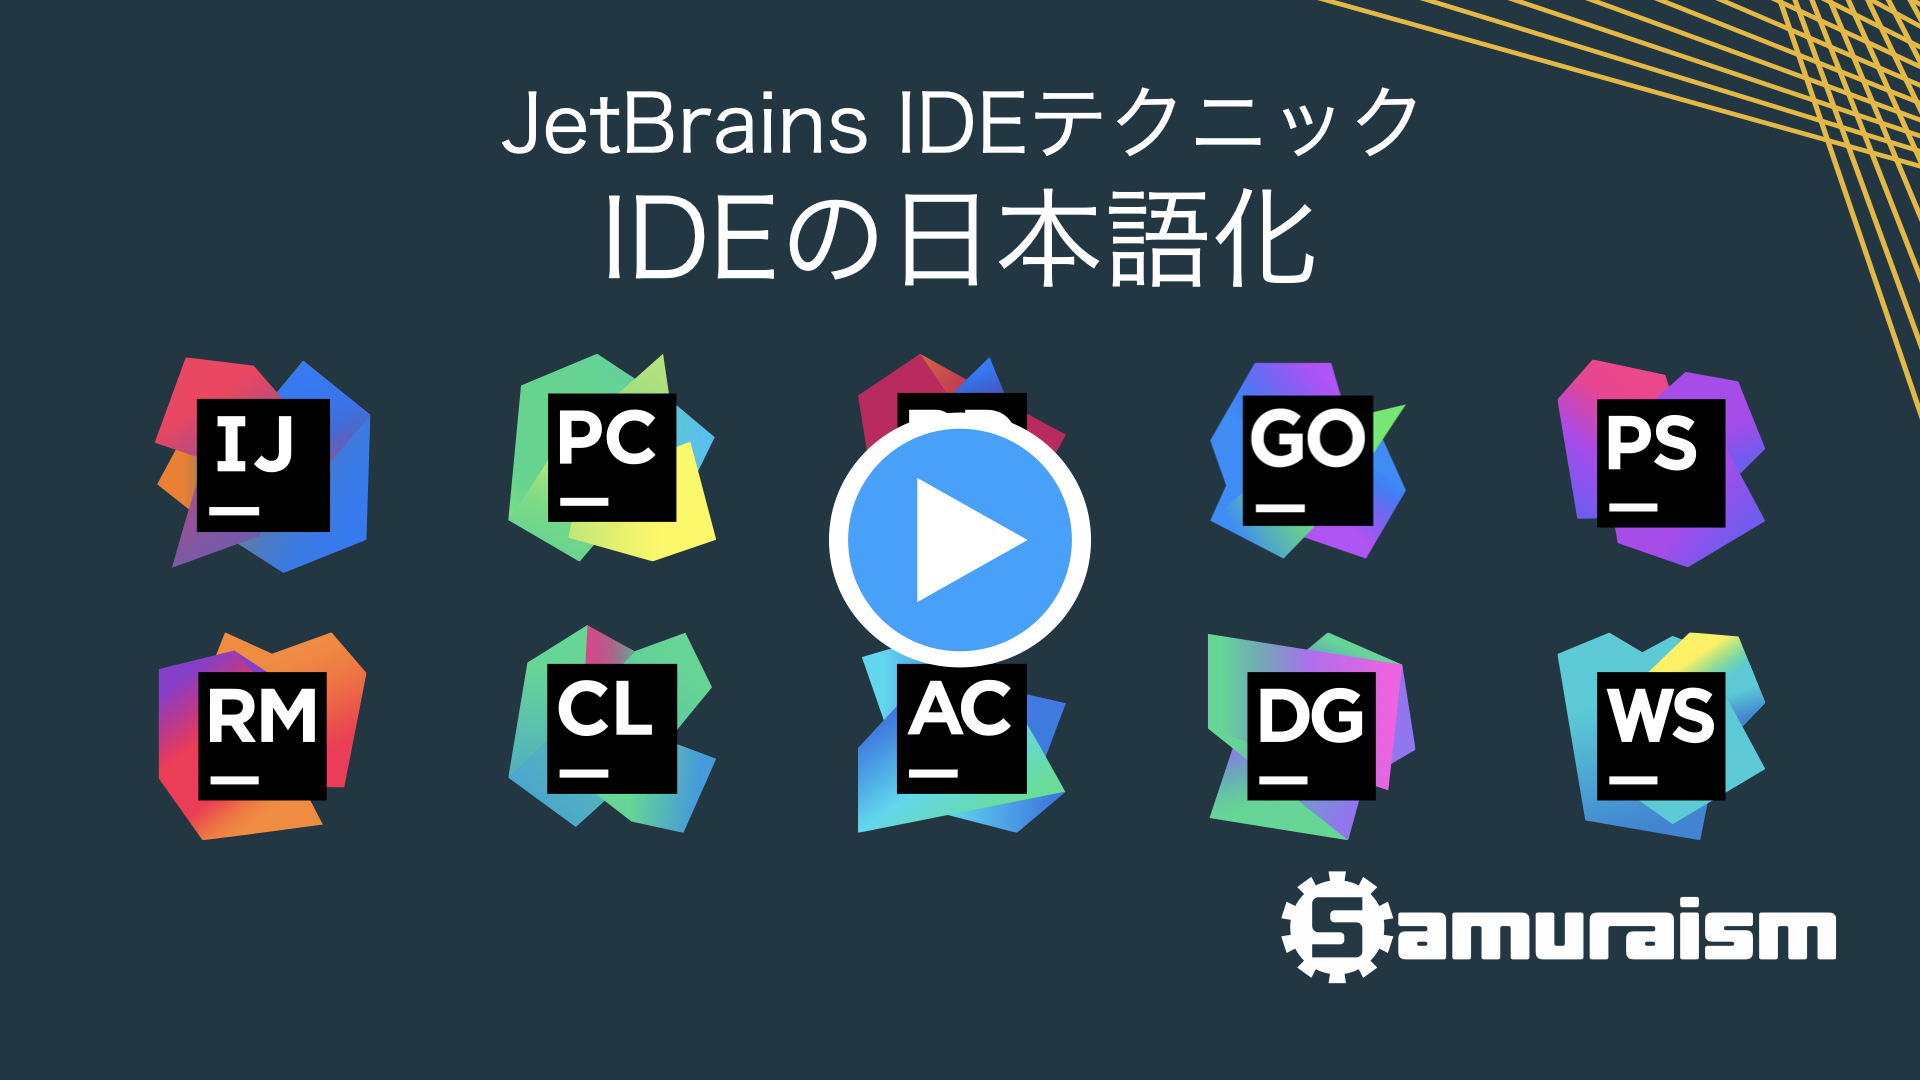 #JetBrainsIDEテクニック – IDE日本語化